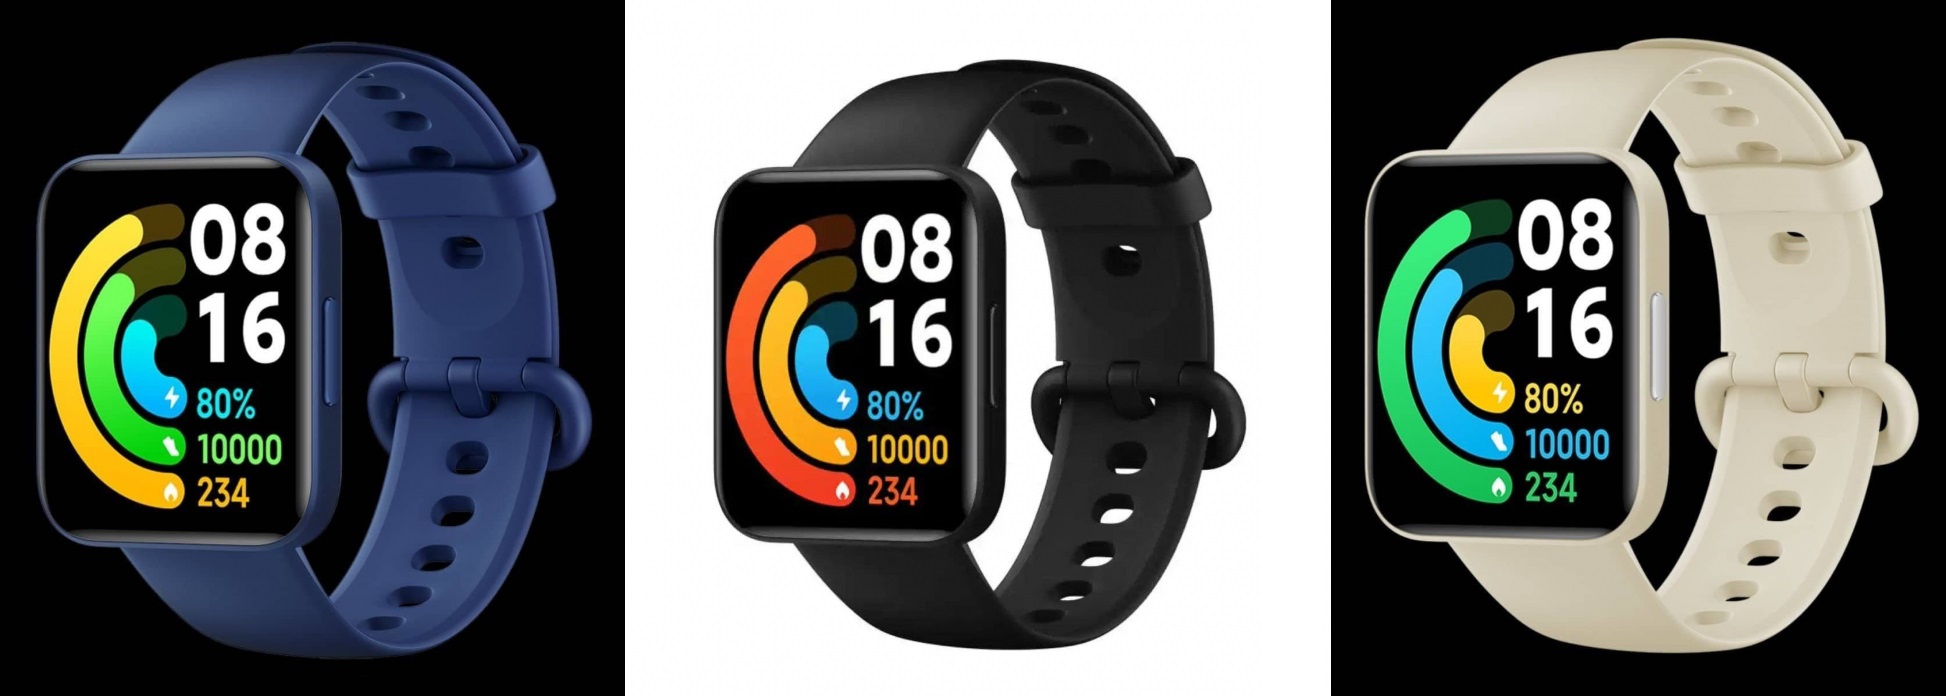 Xiaomi ha pubblicato immagini di alta qualità degli smartwatch Redmi Watch 2